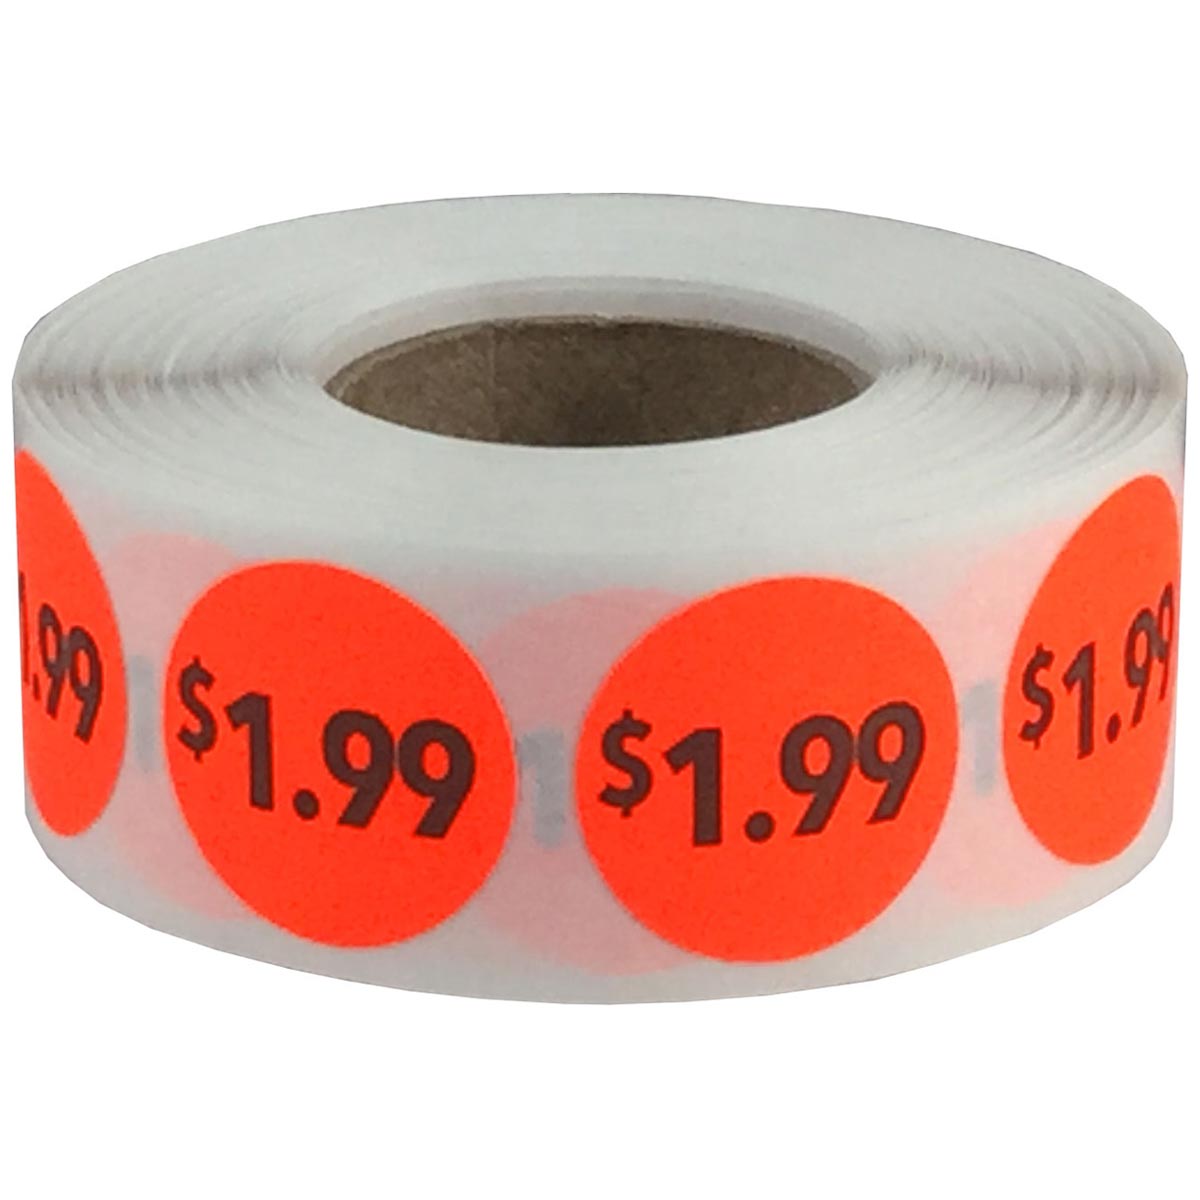 Nuchter Onafhankelijk schotel $1.99 Price Stickers Fluorescent Red 3/4" Round | InStockLabels.com